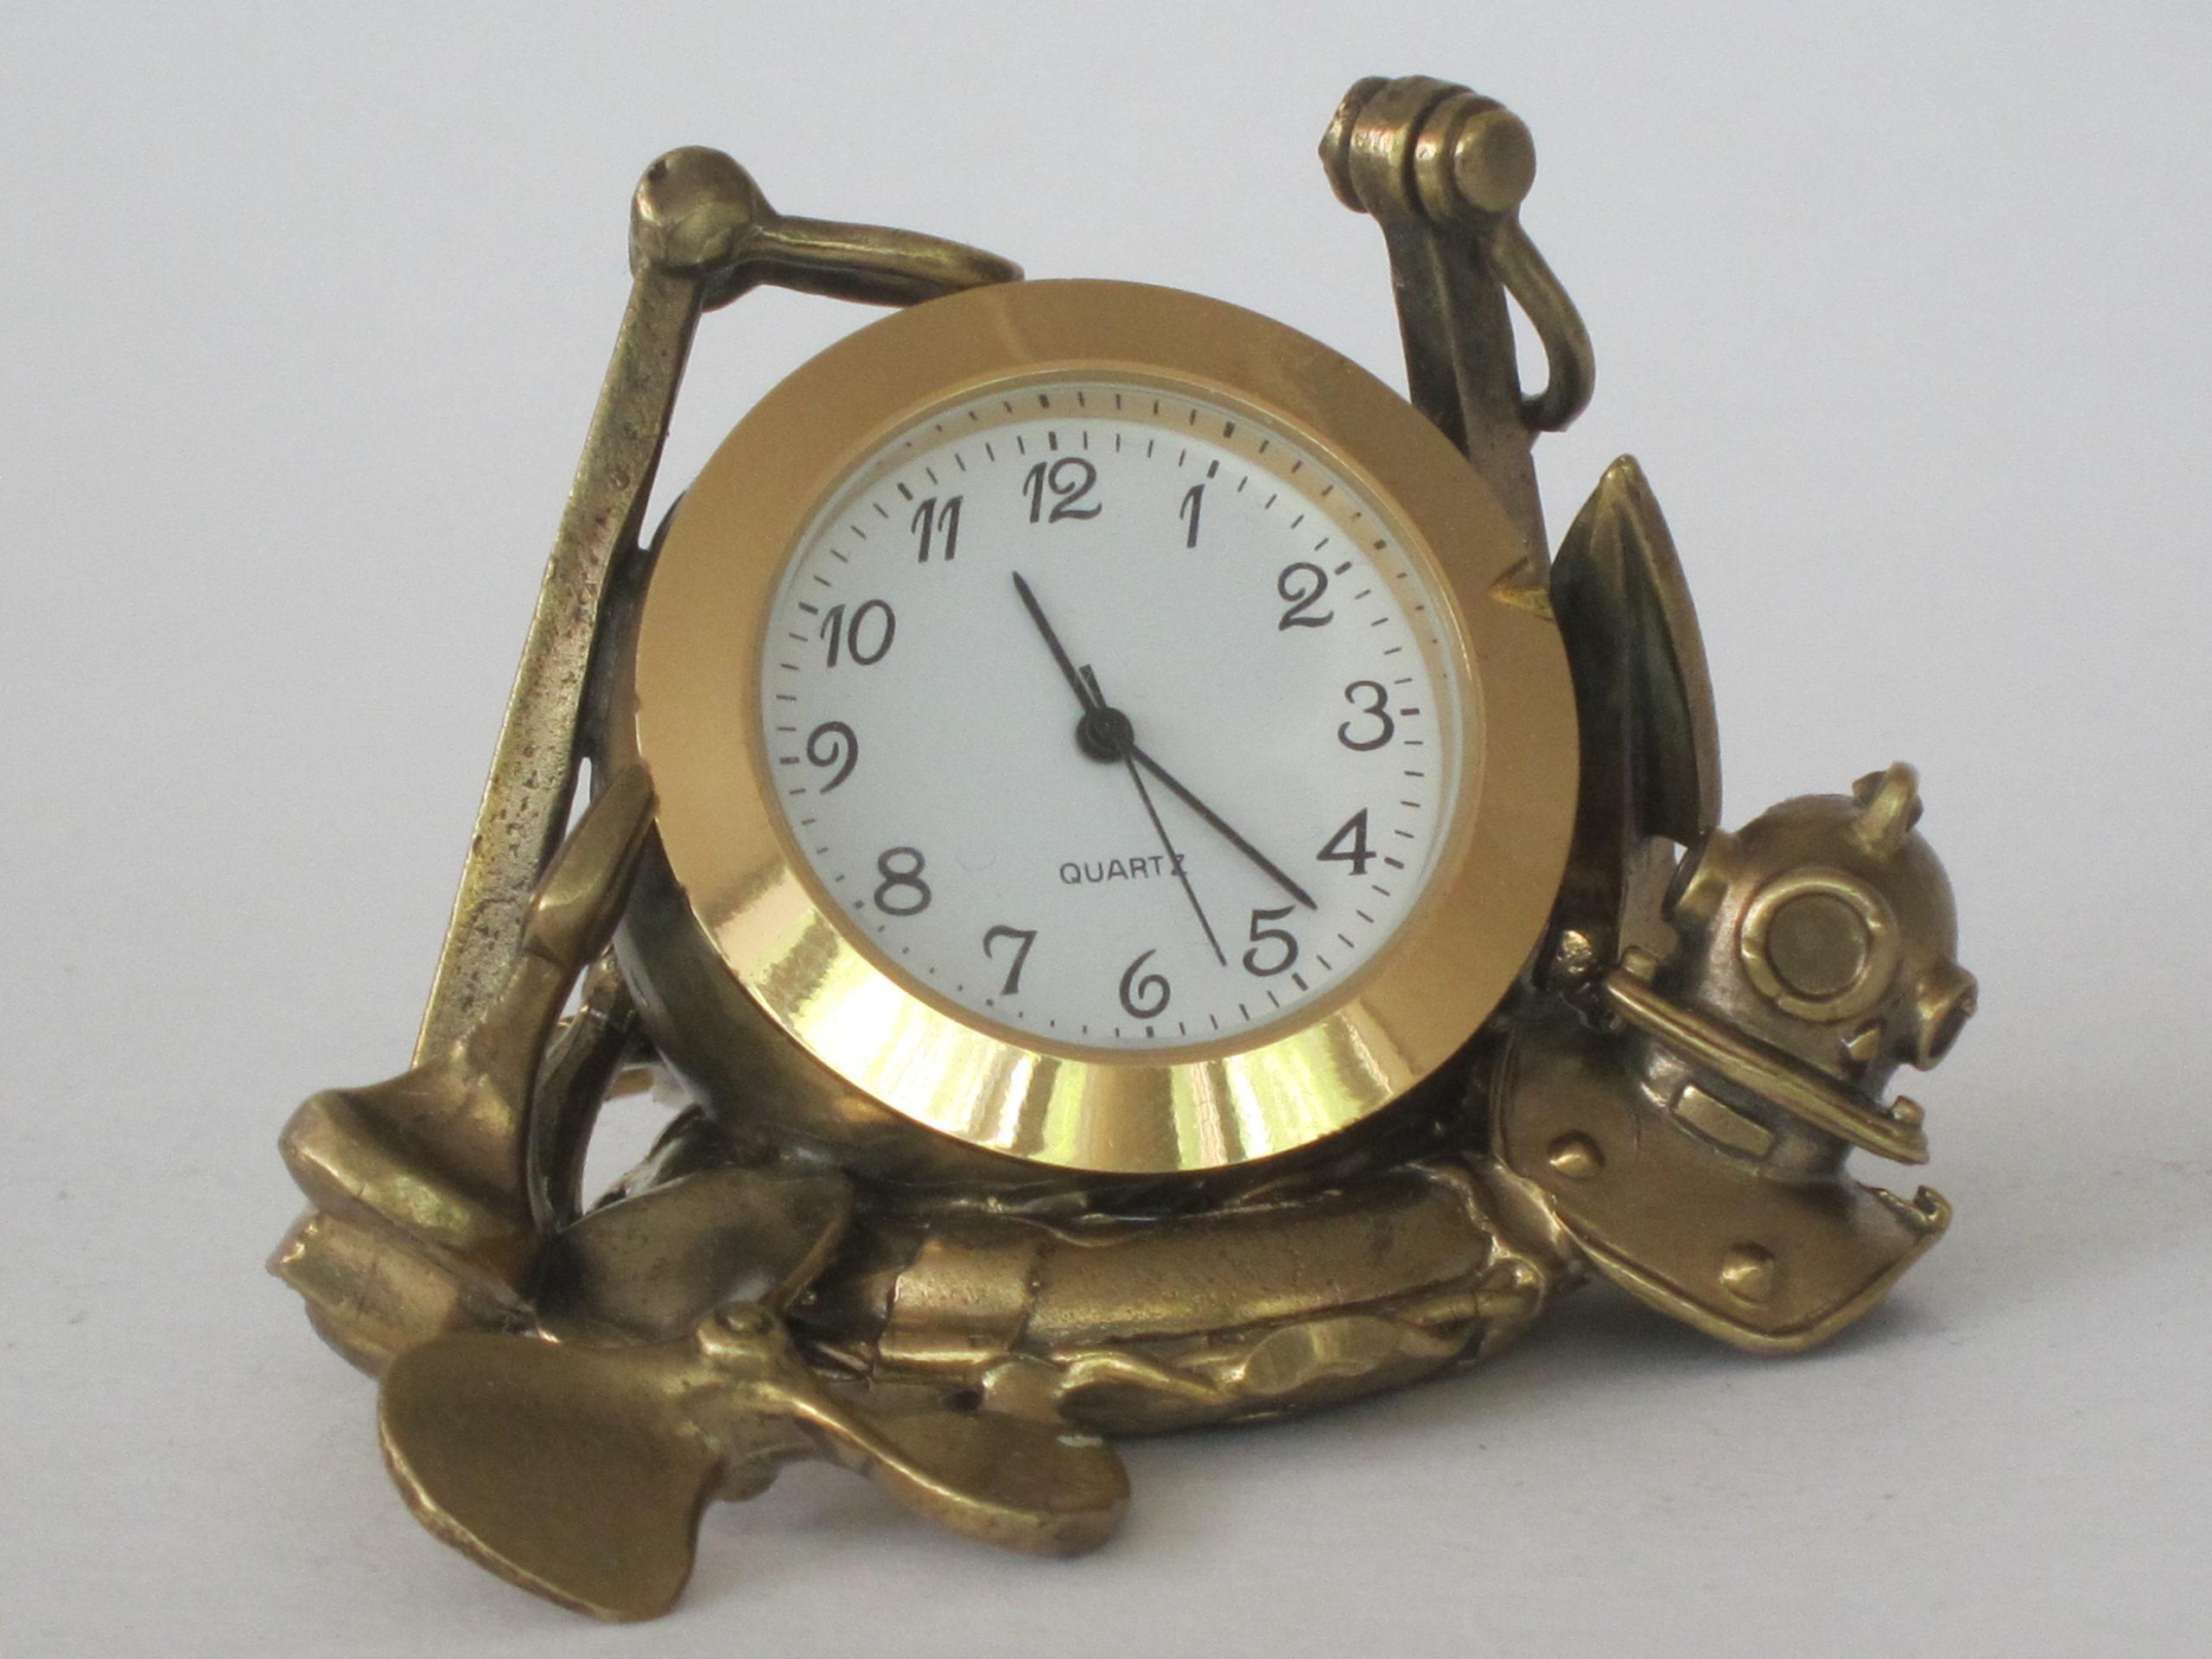 Морские часы купить. Часы настольные «морские». Бронзовые настольные часы. Часы сувенирные настольные. Настольные часы морской тематики.